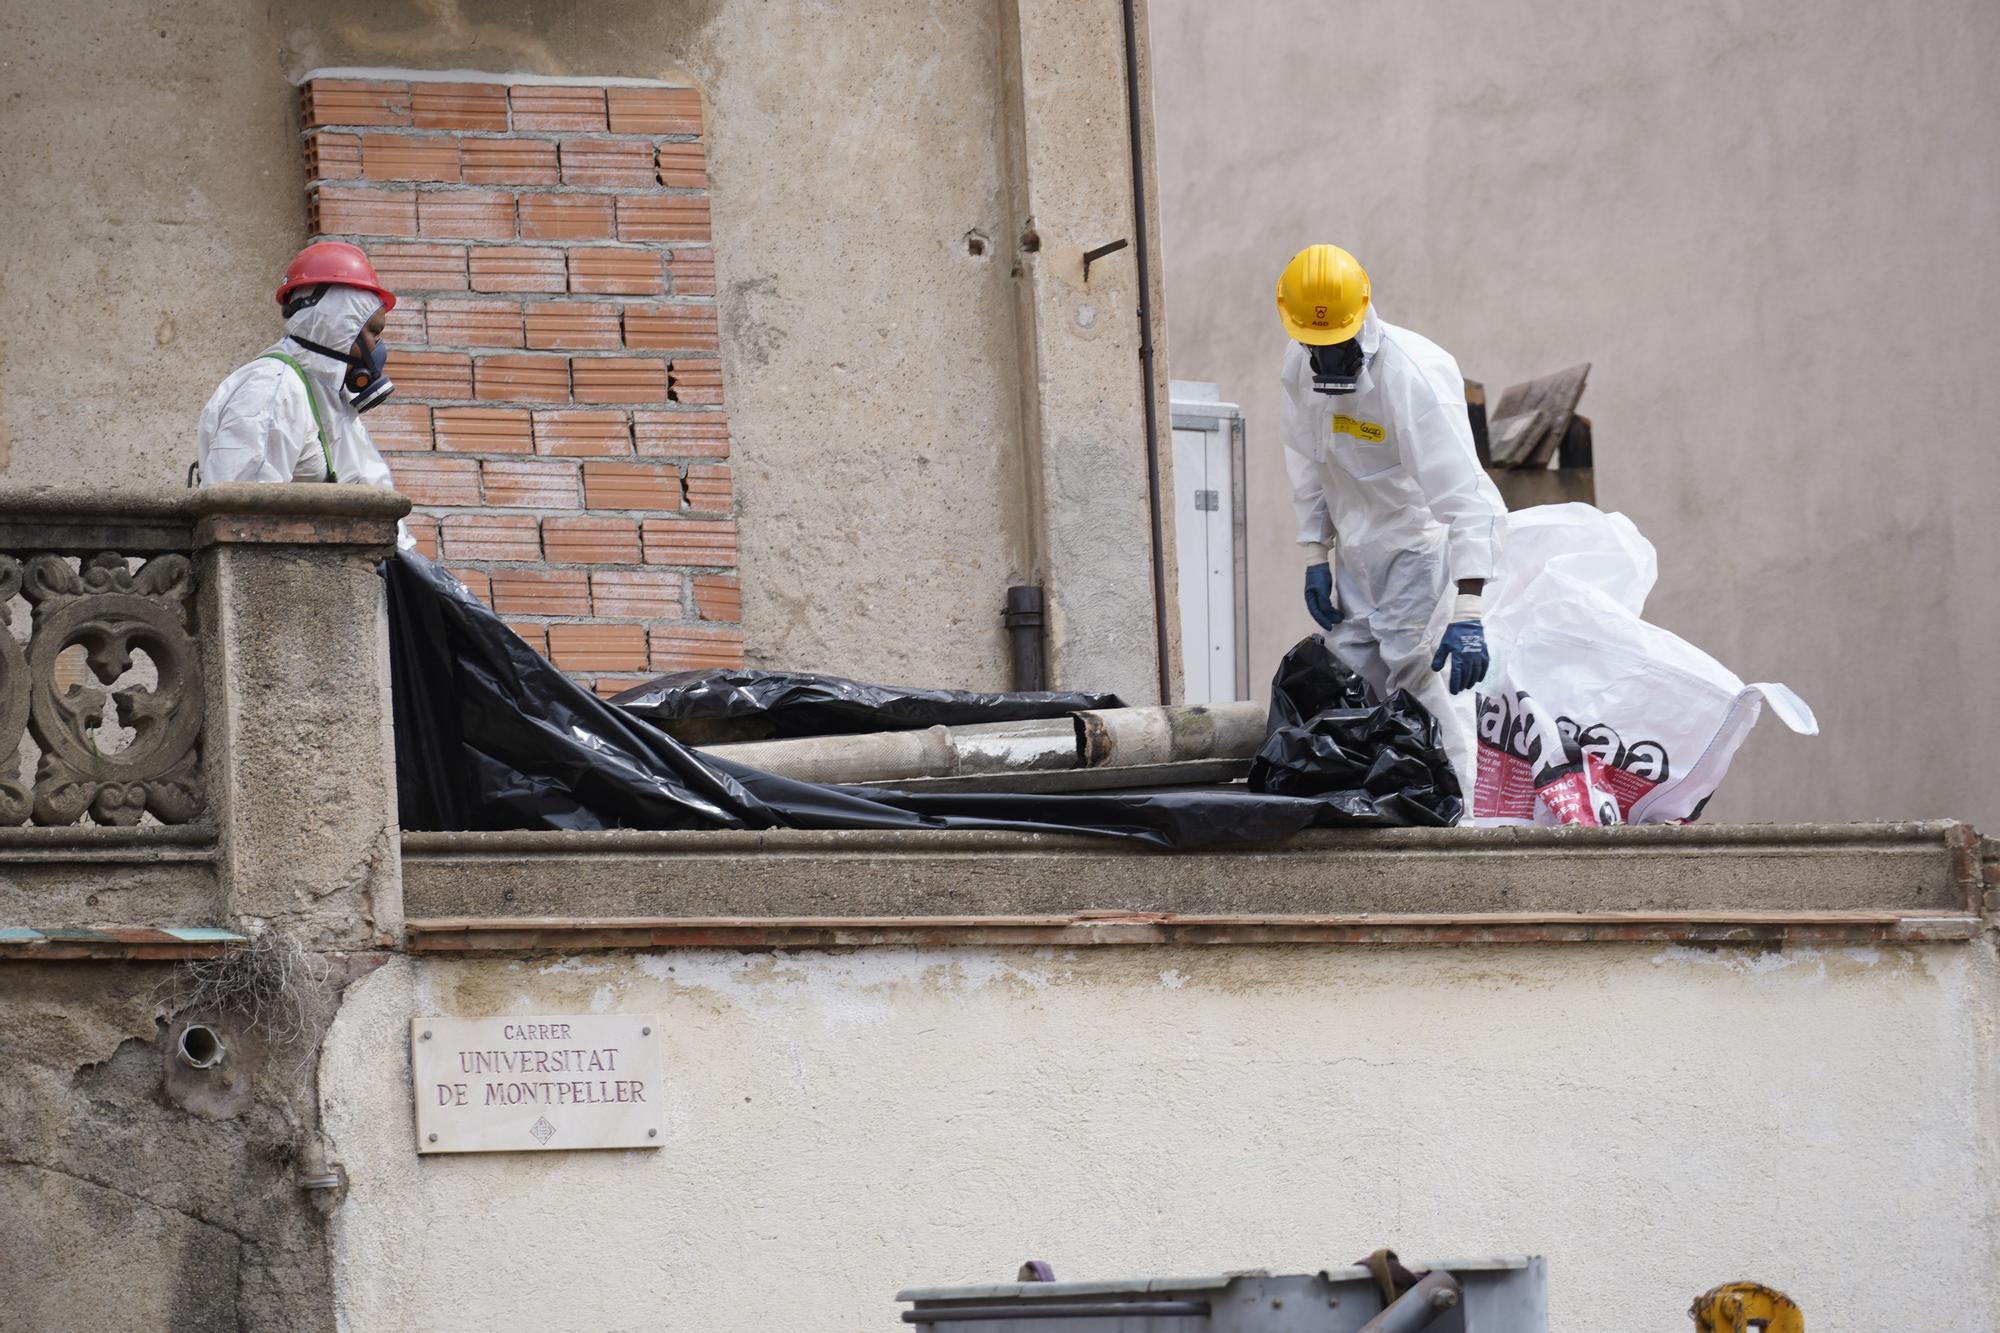 Retiren el fibrociment per enderrocar els edificis del carrer Universitat de Montpeller